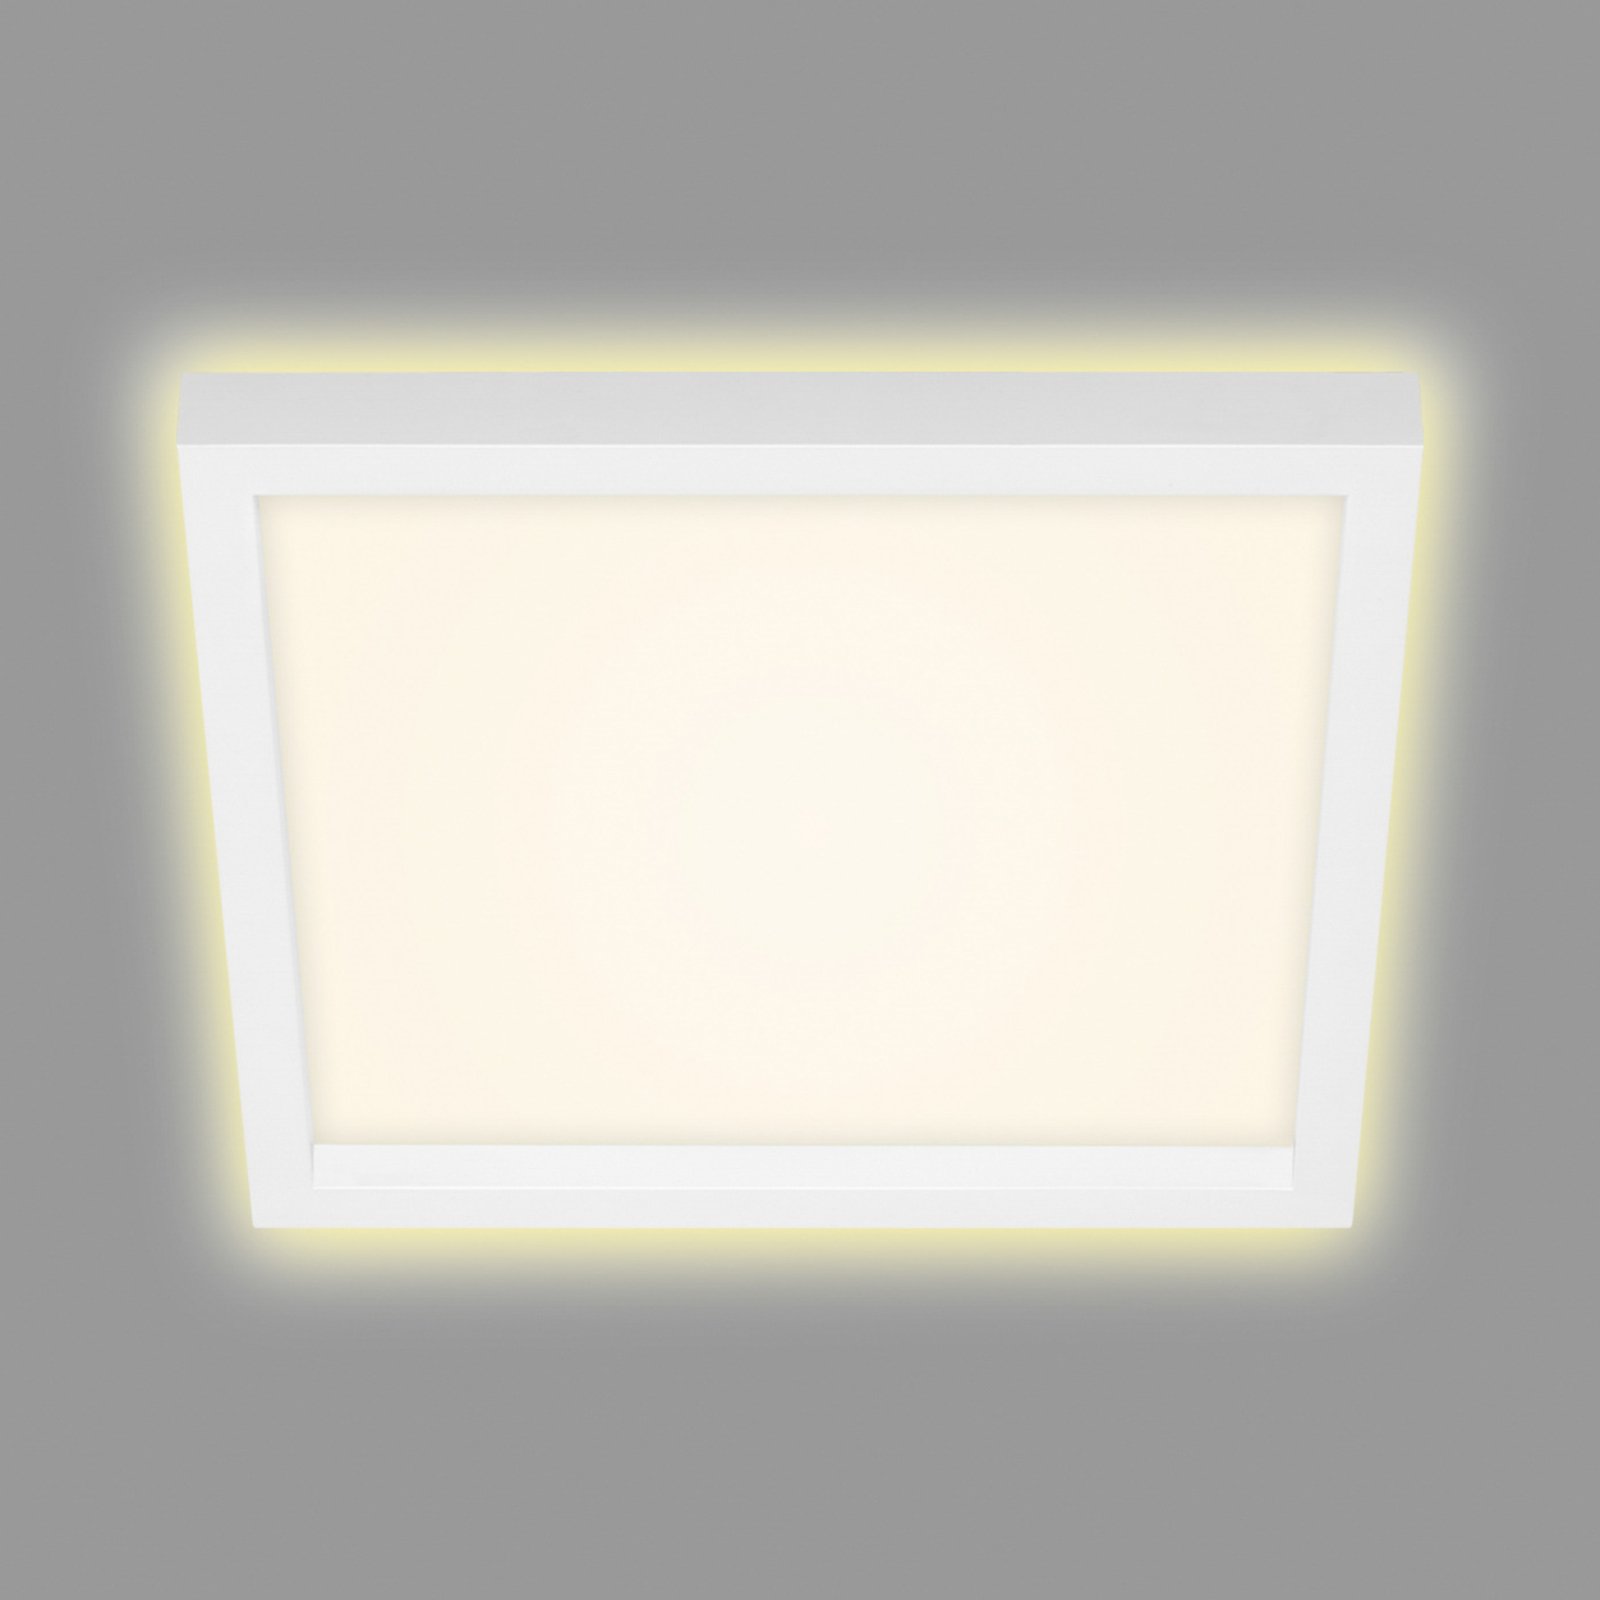 LED-Deckenlampe 7362, 29 x 29 cm, weiß